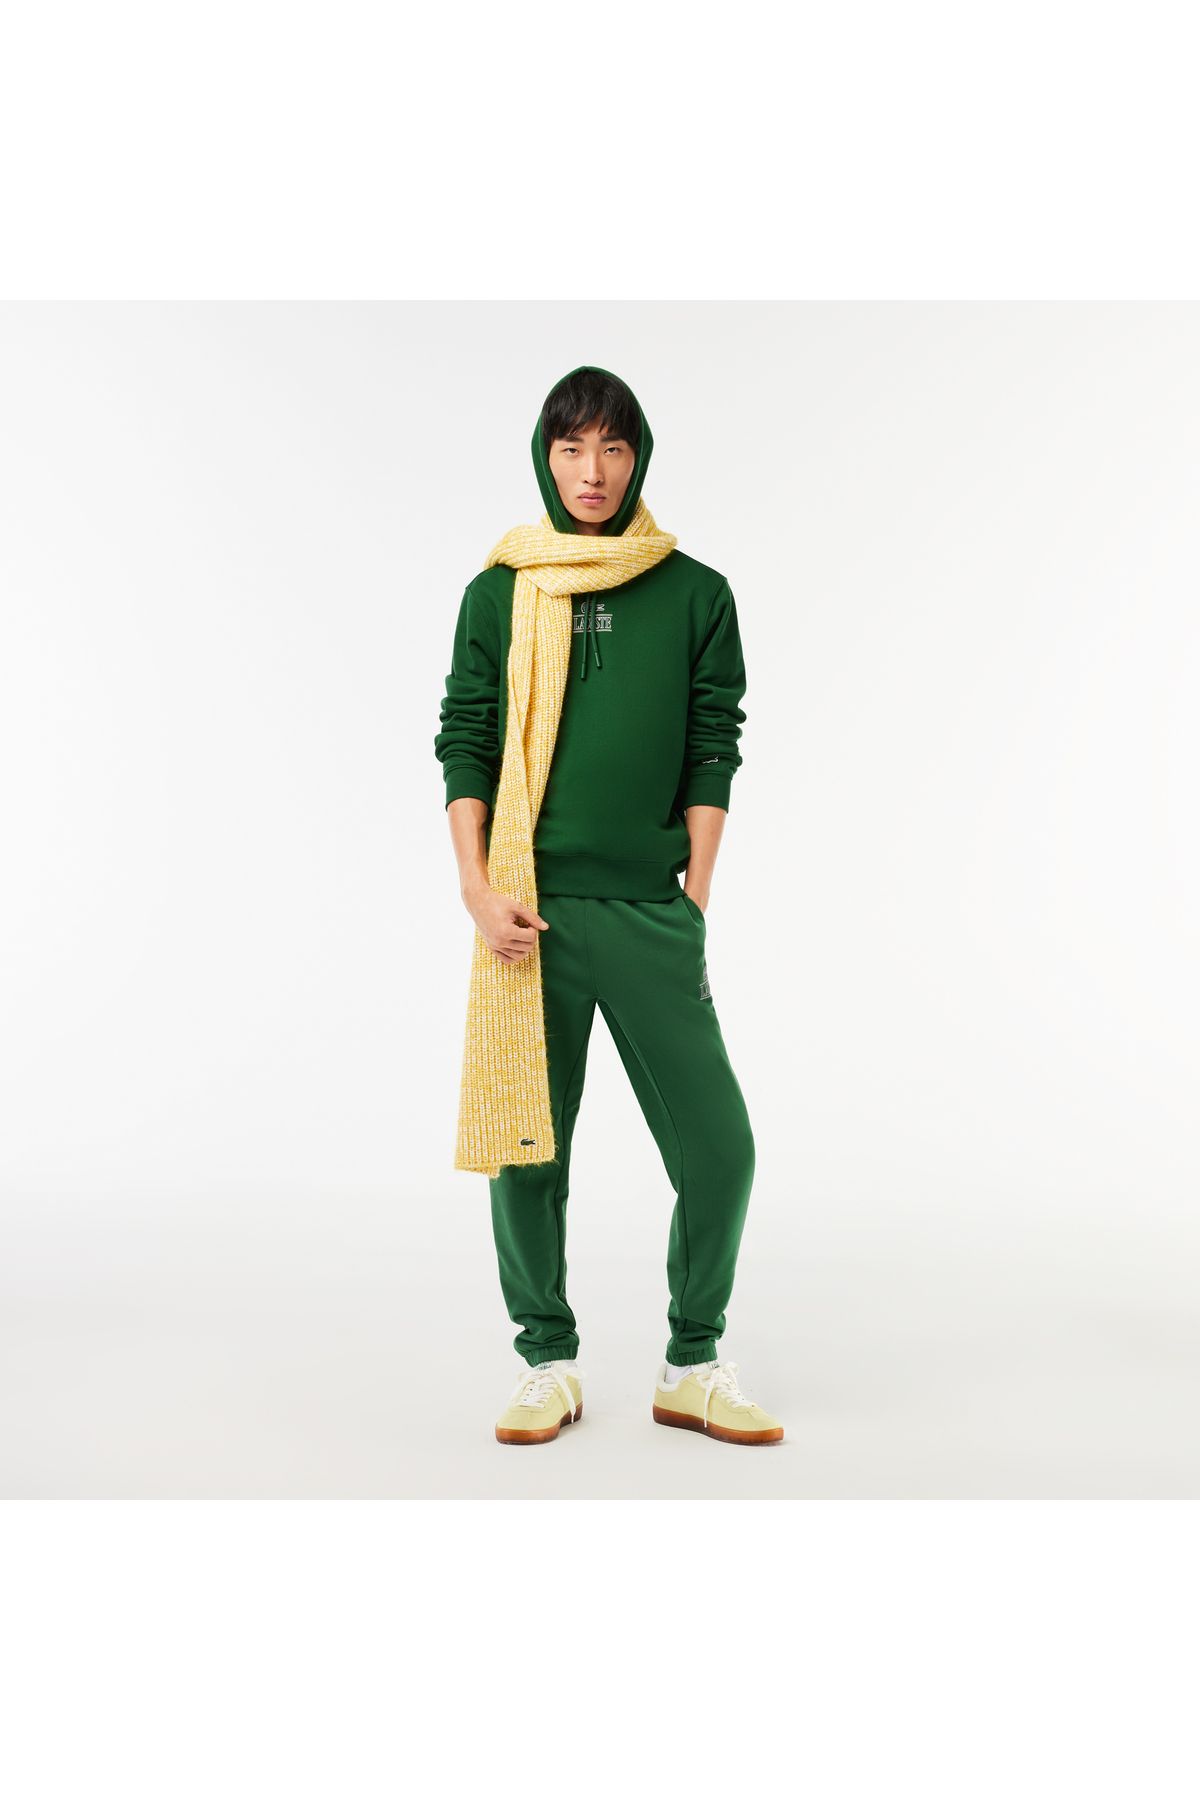 Lacoste پیراهن سبز با روکش کلاسیک مناسب مردان